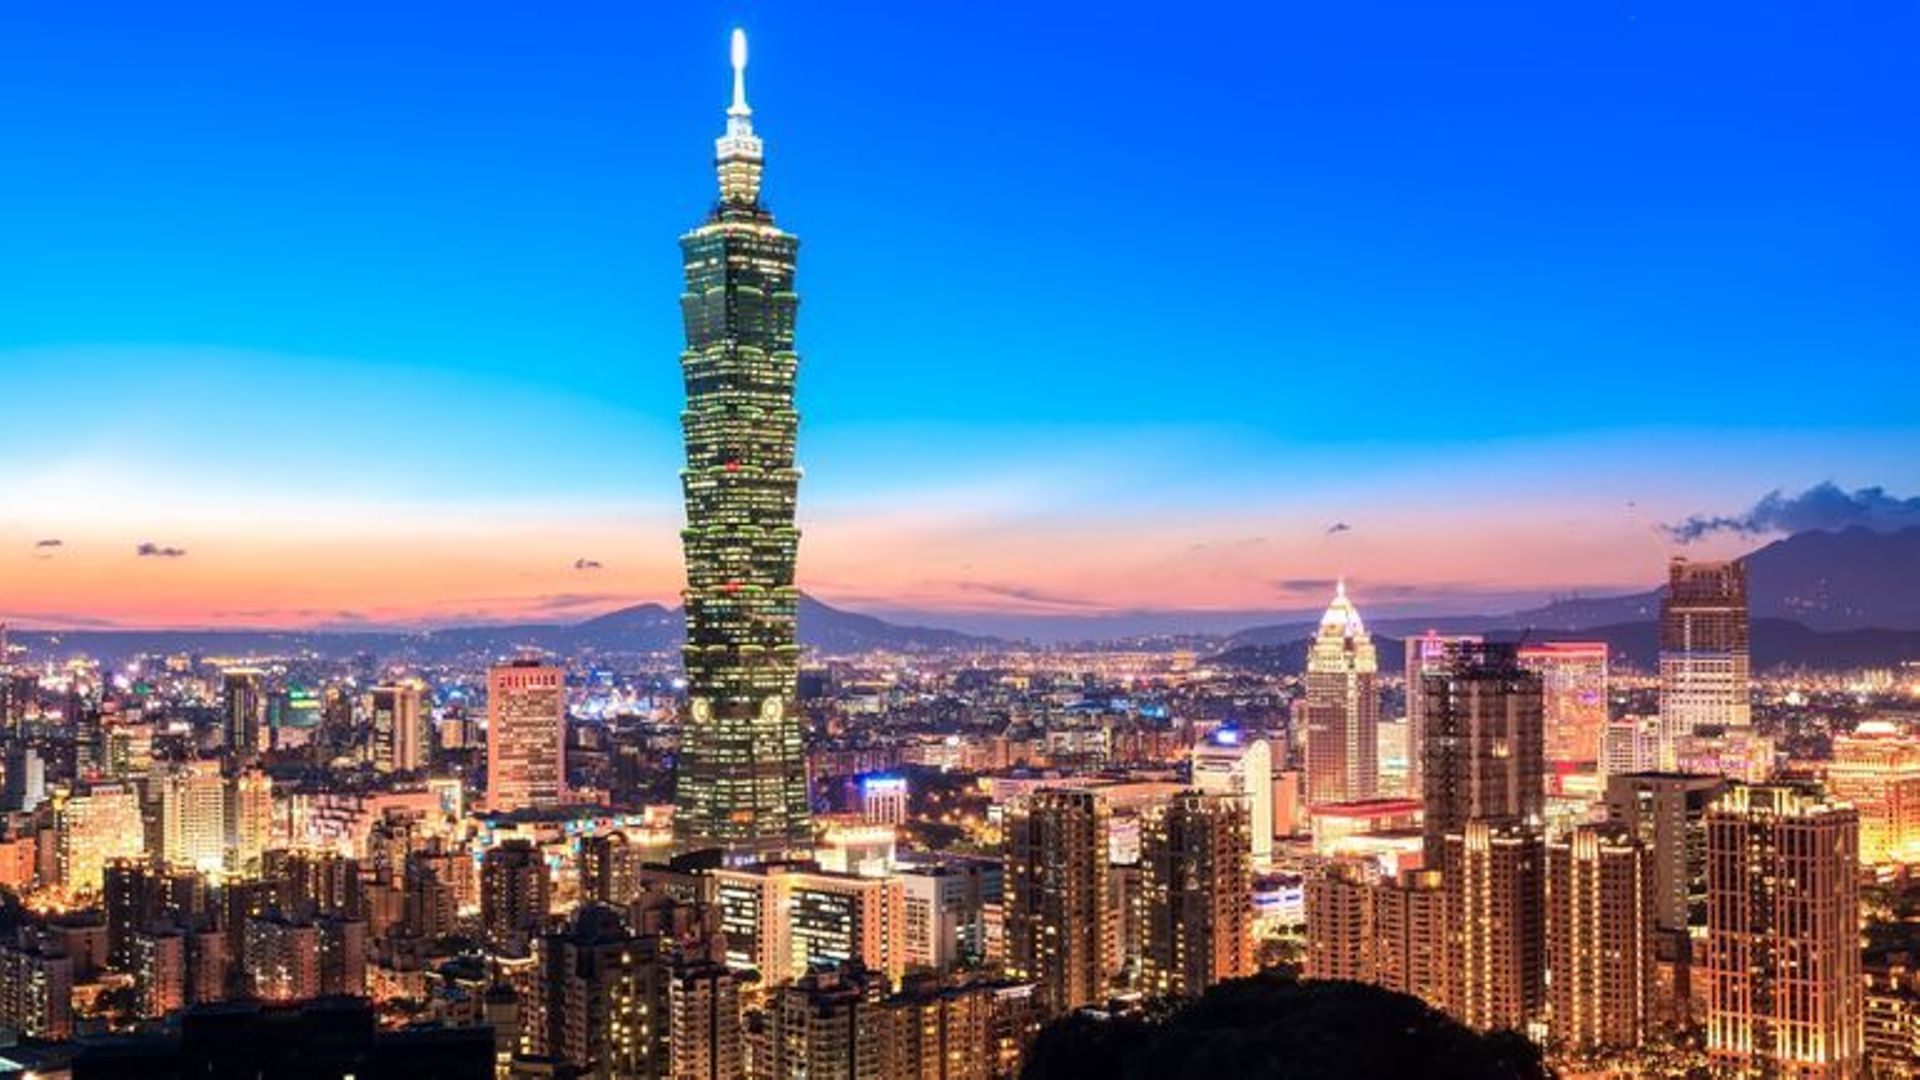 Taïwan change la couverture de son passeport pour éviter d'être confondu avec la Chine